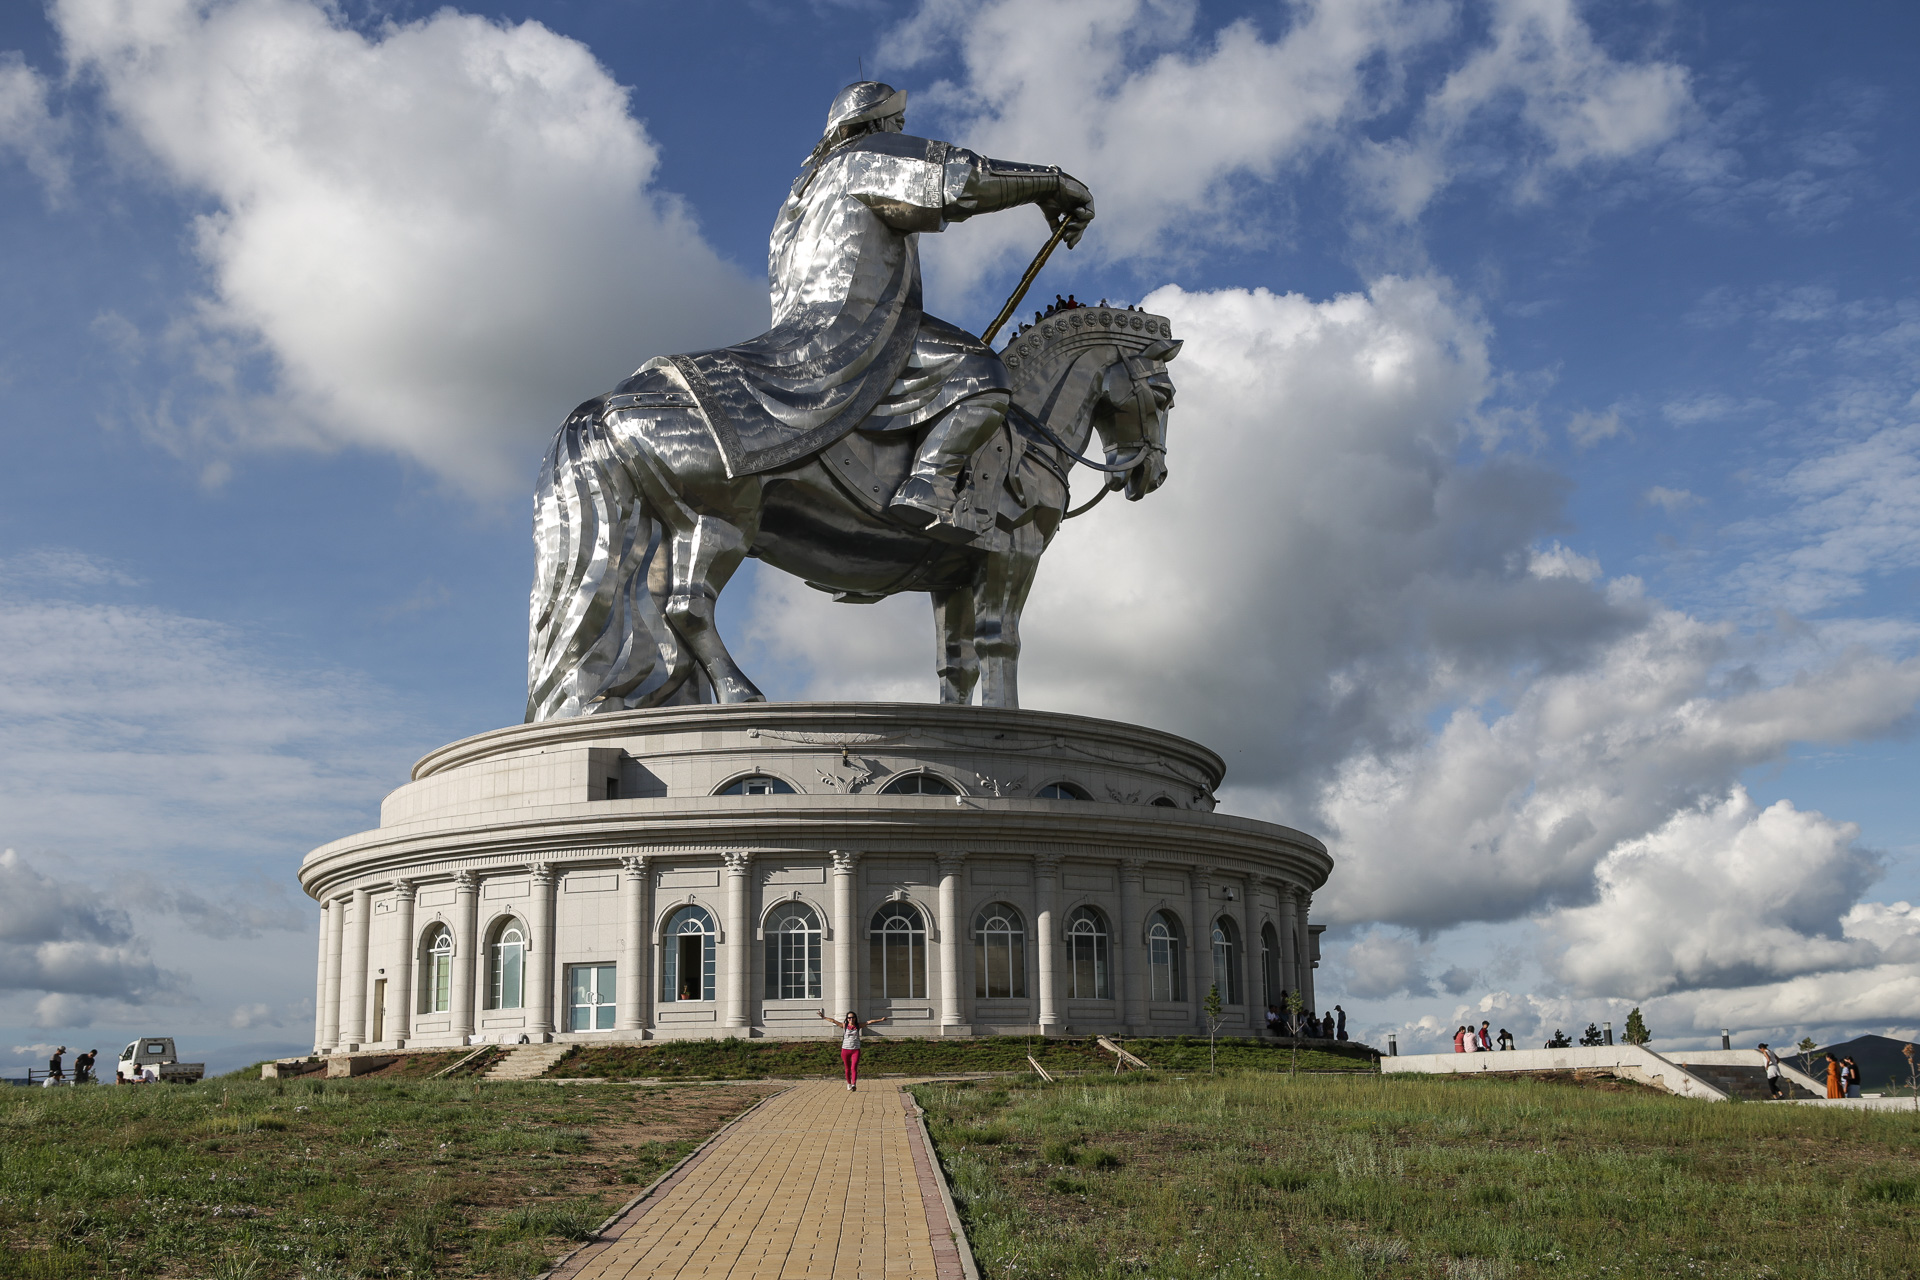 Devant l’immense statue équestre de Gengis Khan, à 50 kilomètres de la capitale